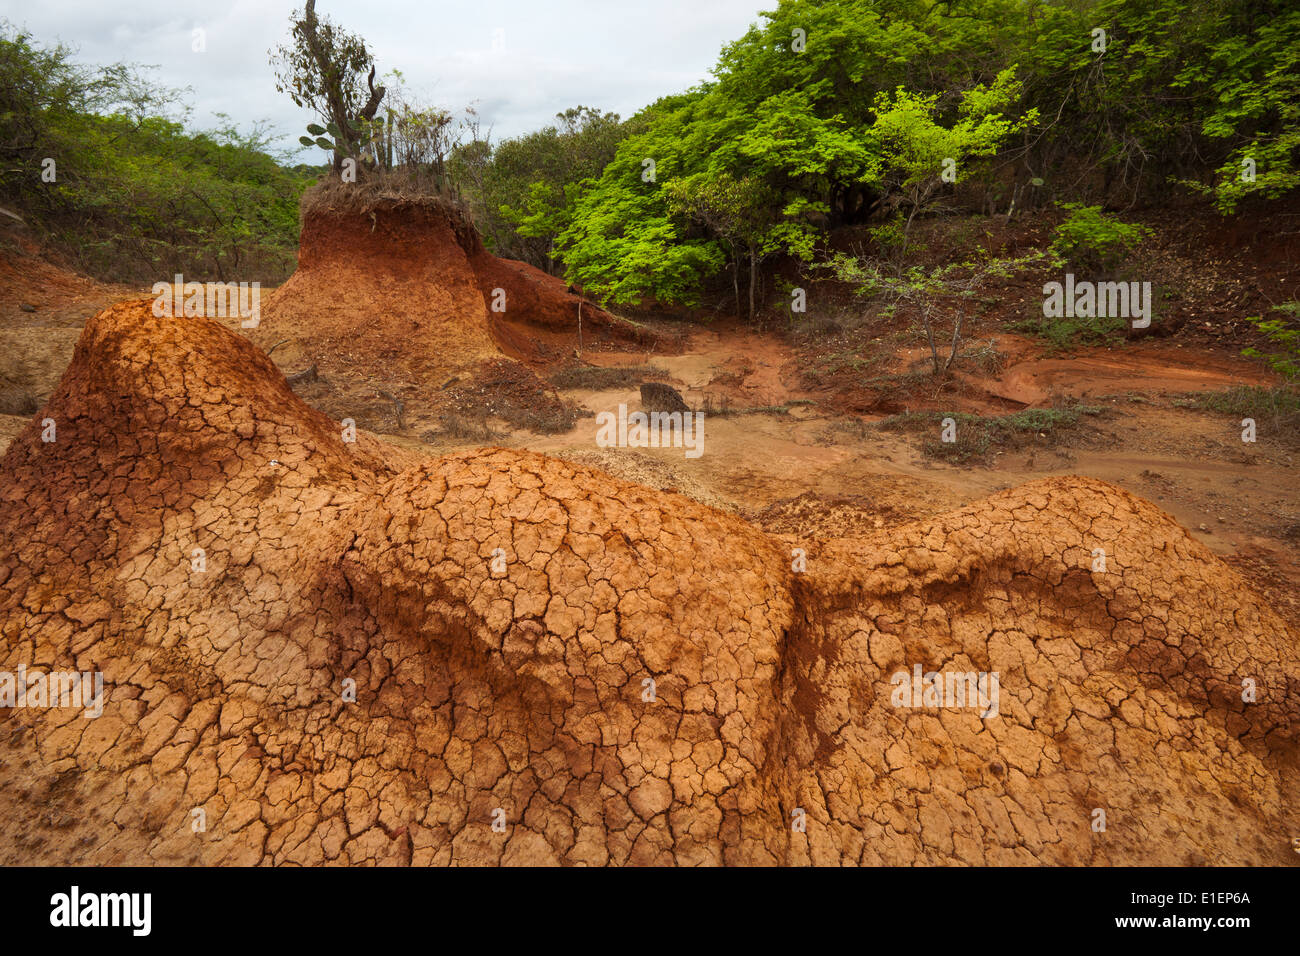 Paesaggio eroso in Sarigua national park (deserto) nella provincia di Herrera, Repubblica di Panama. Foto Stock